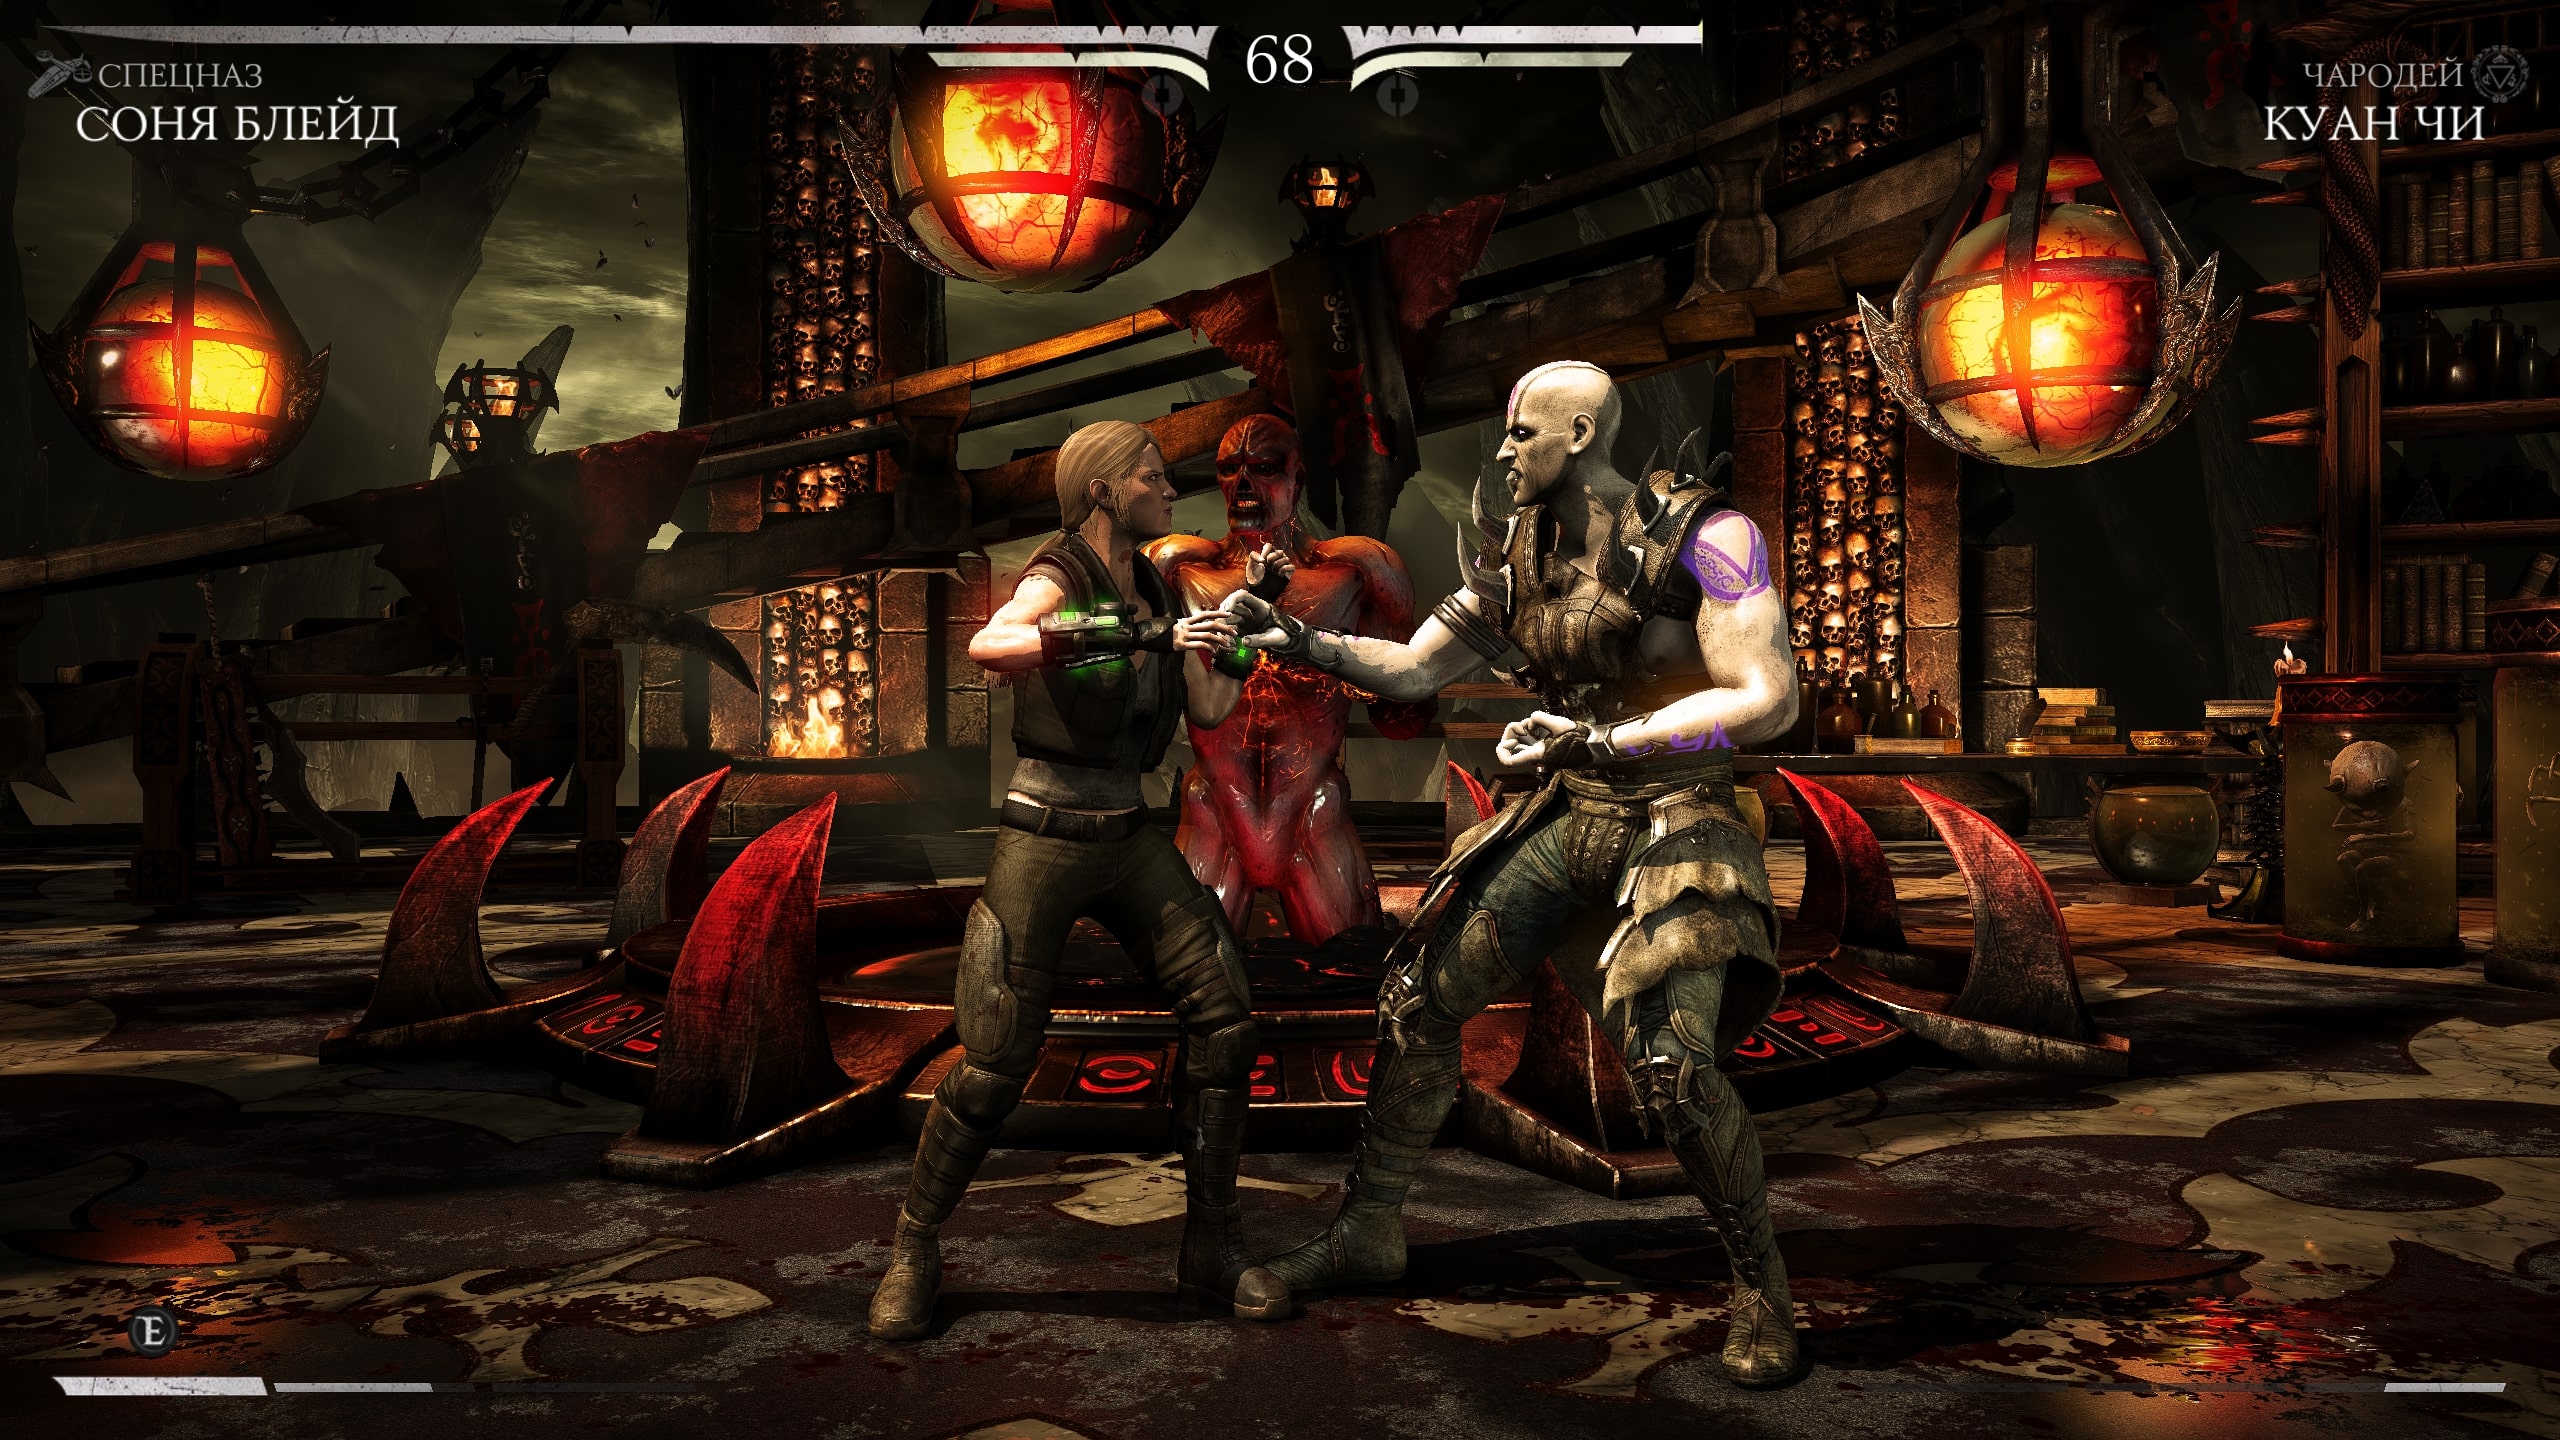 Mortal kombat x updates steam фото 68